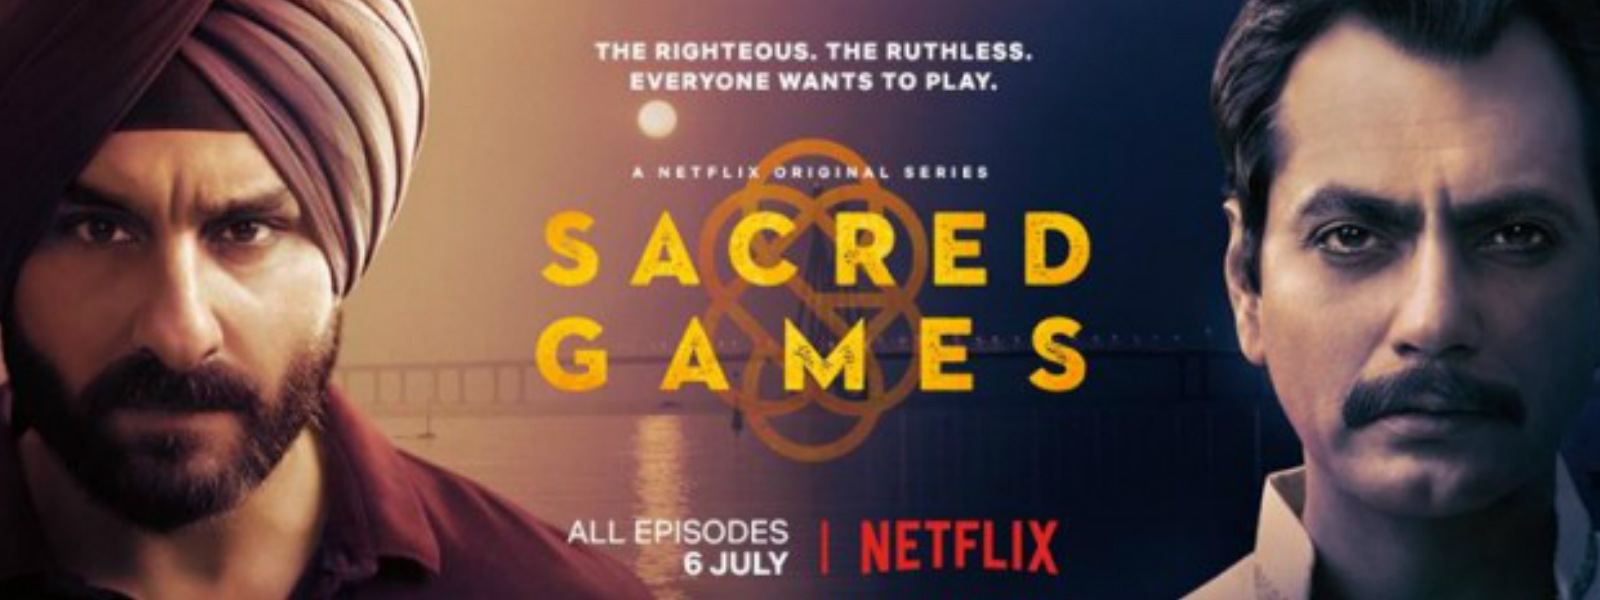 'Sacred Games' marks Netflix debut 